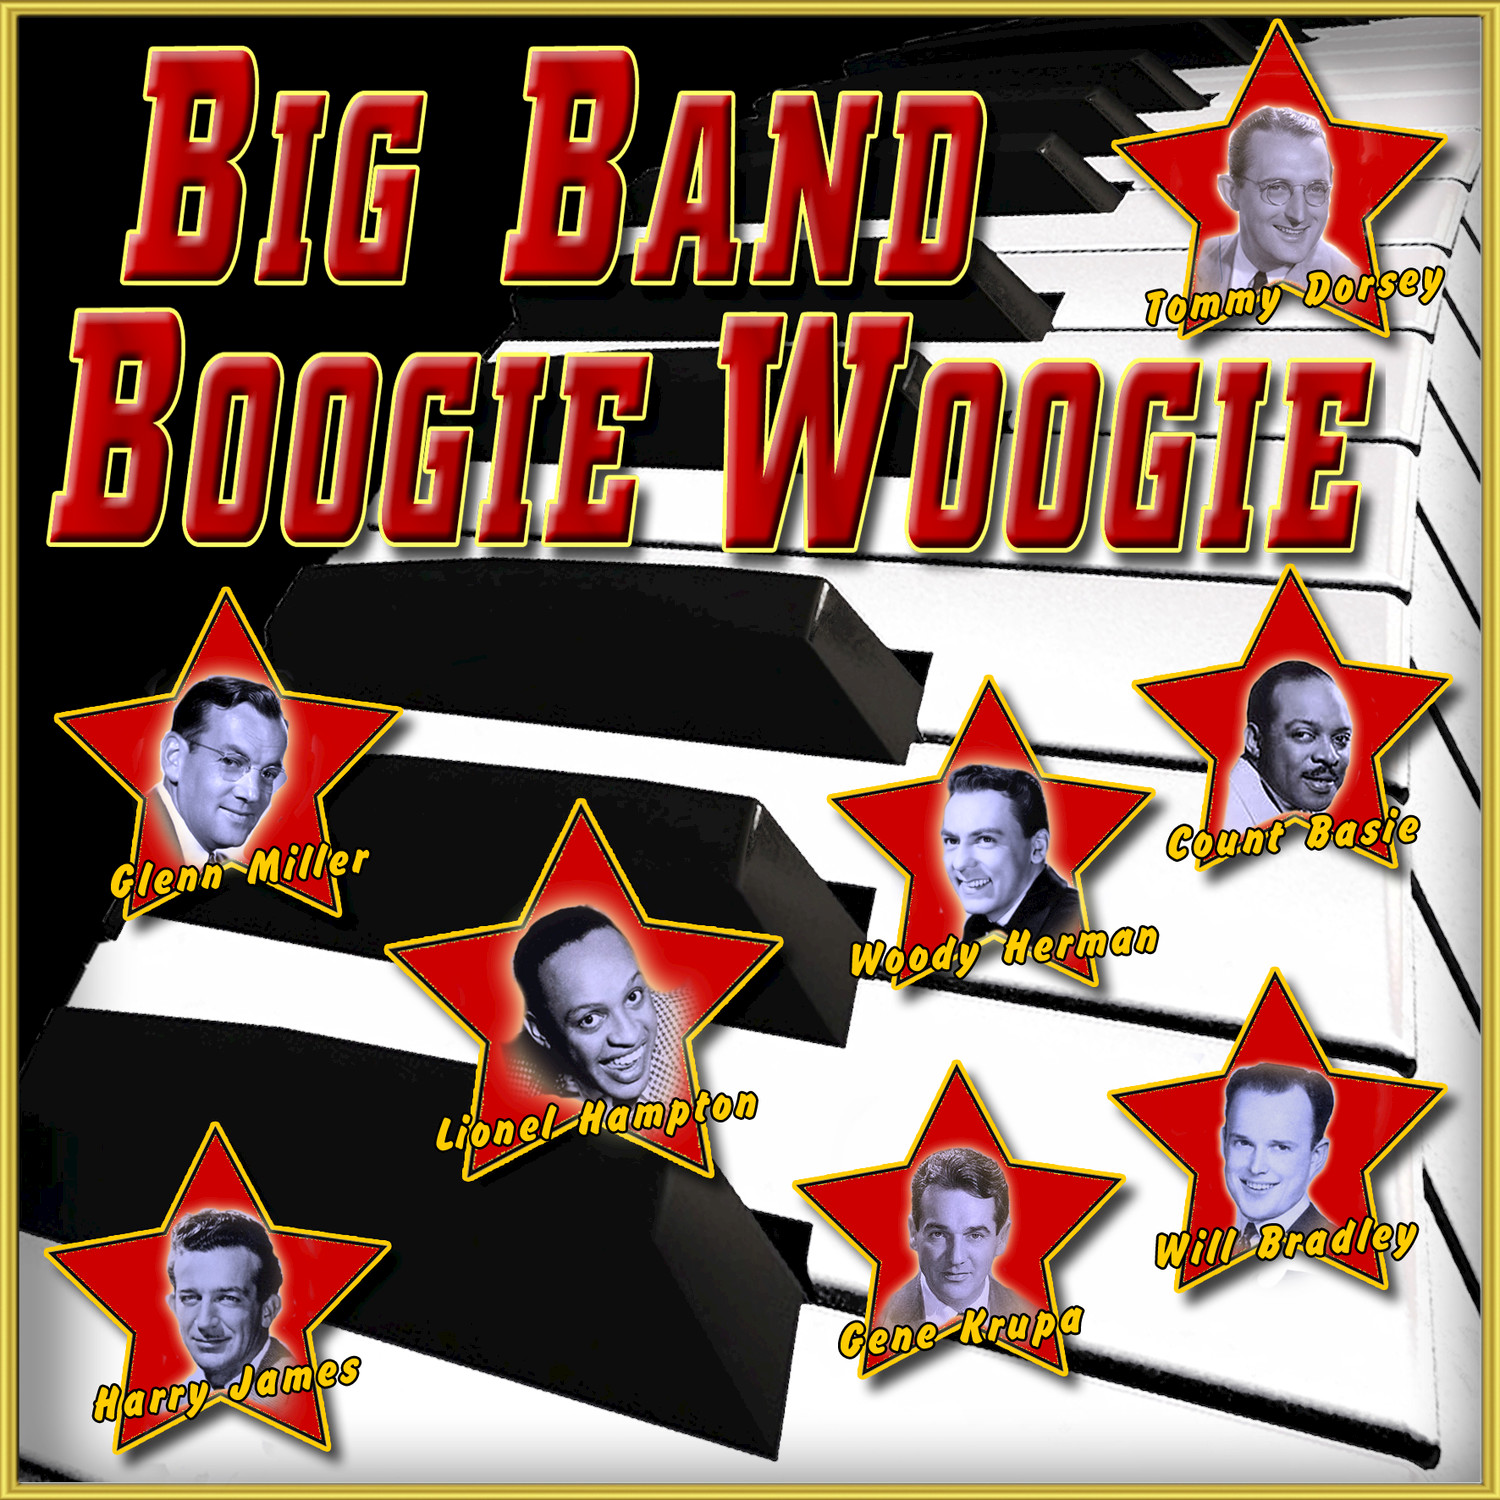 Hamp's Boogie Woogie No. 1